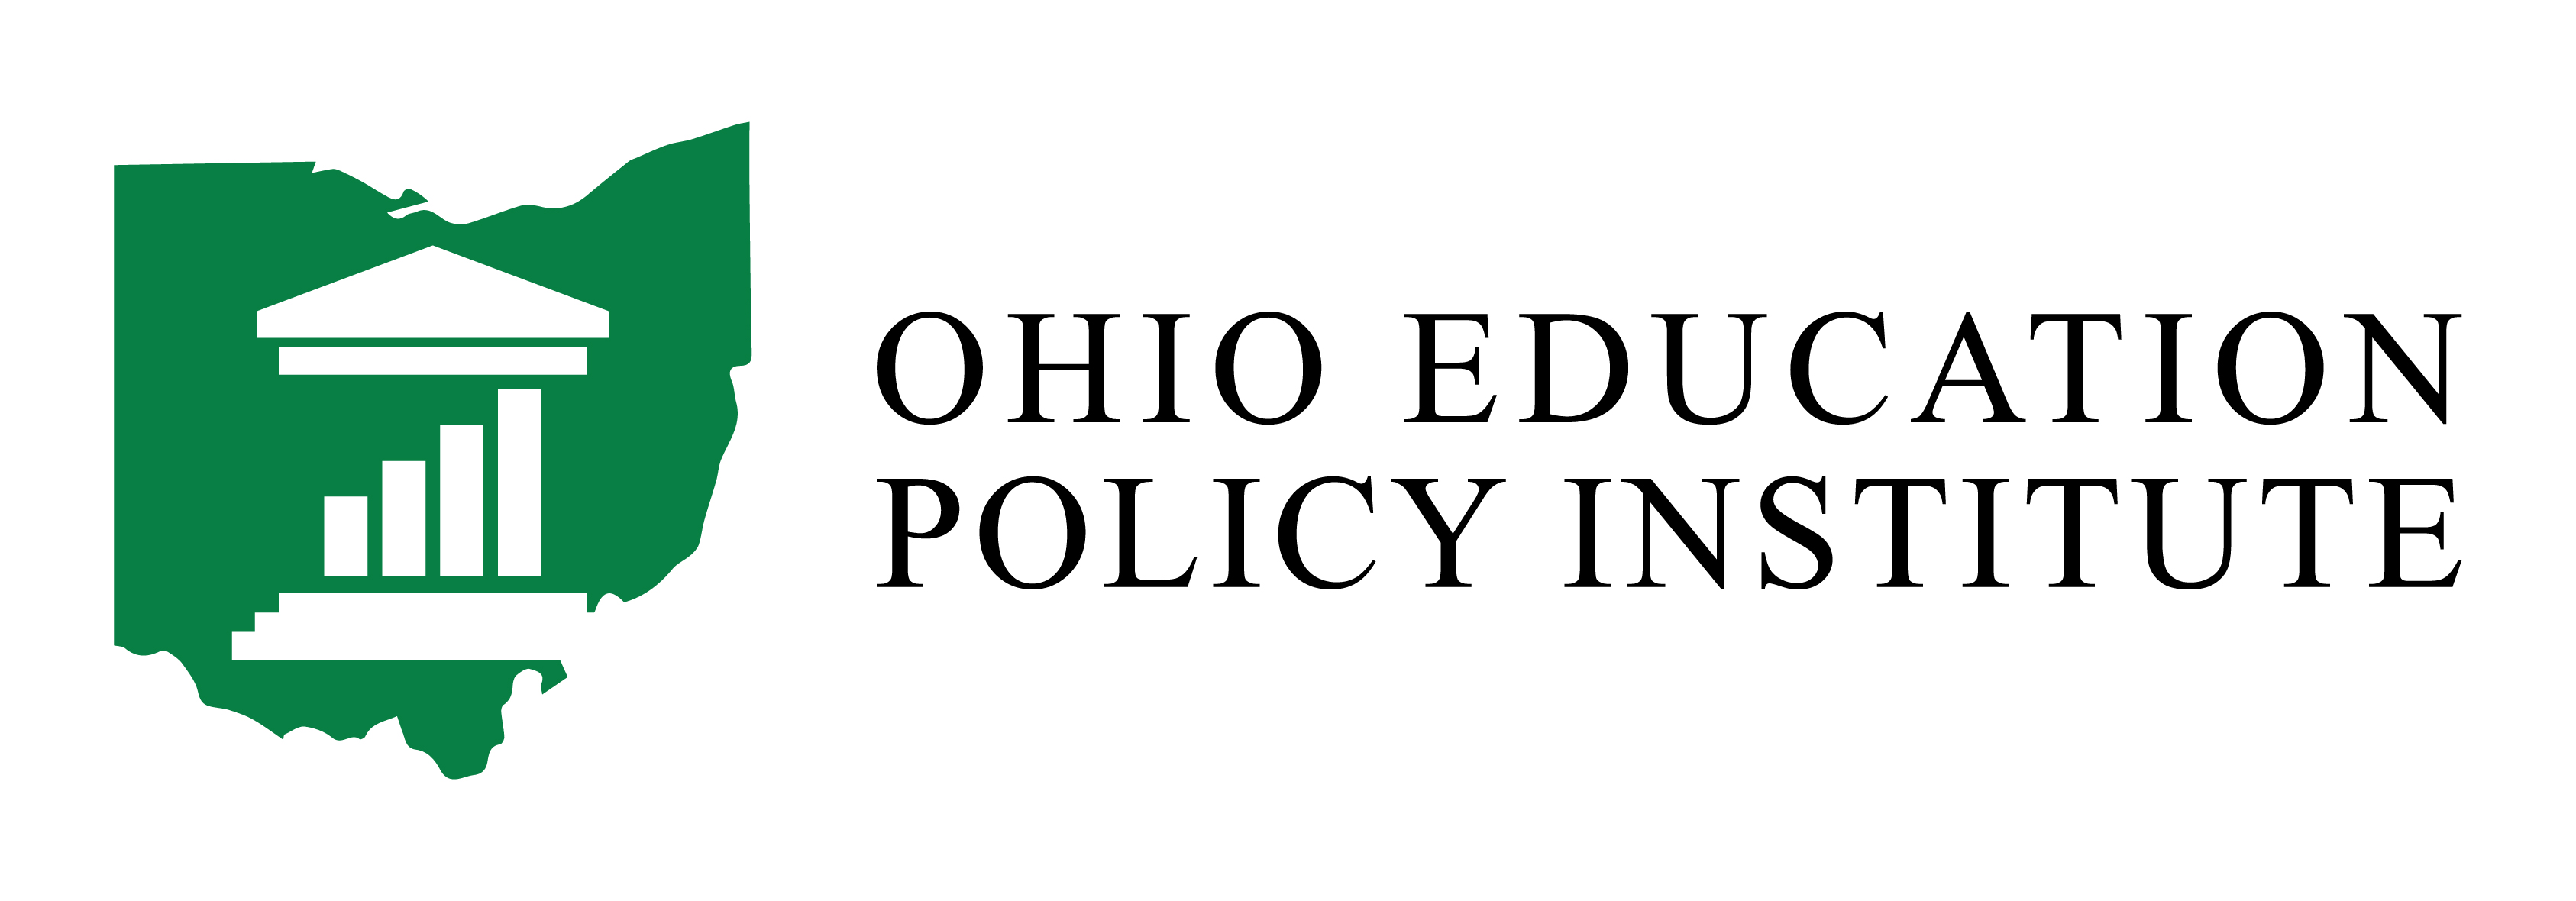 Ohio Education Policy Institute